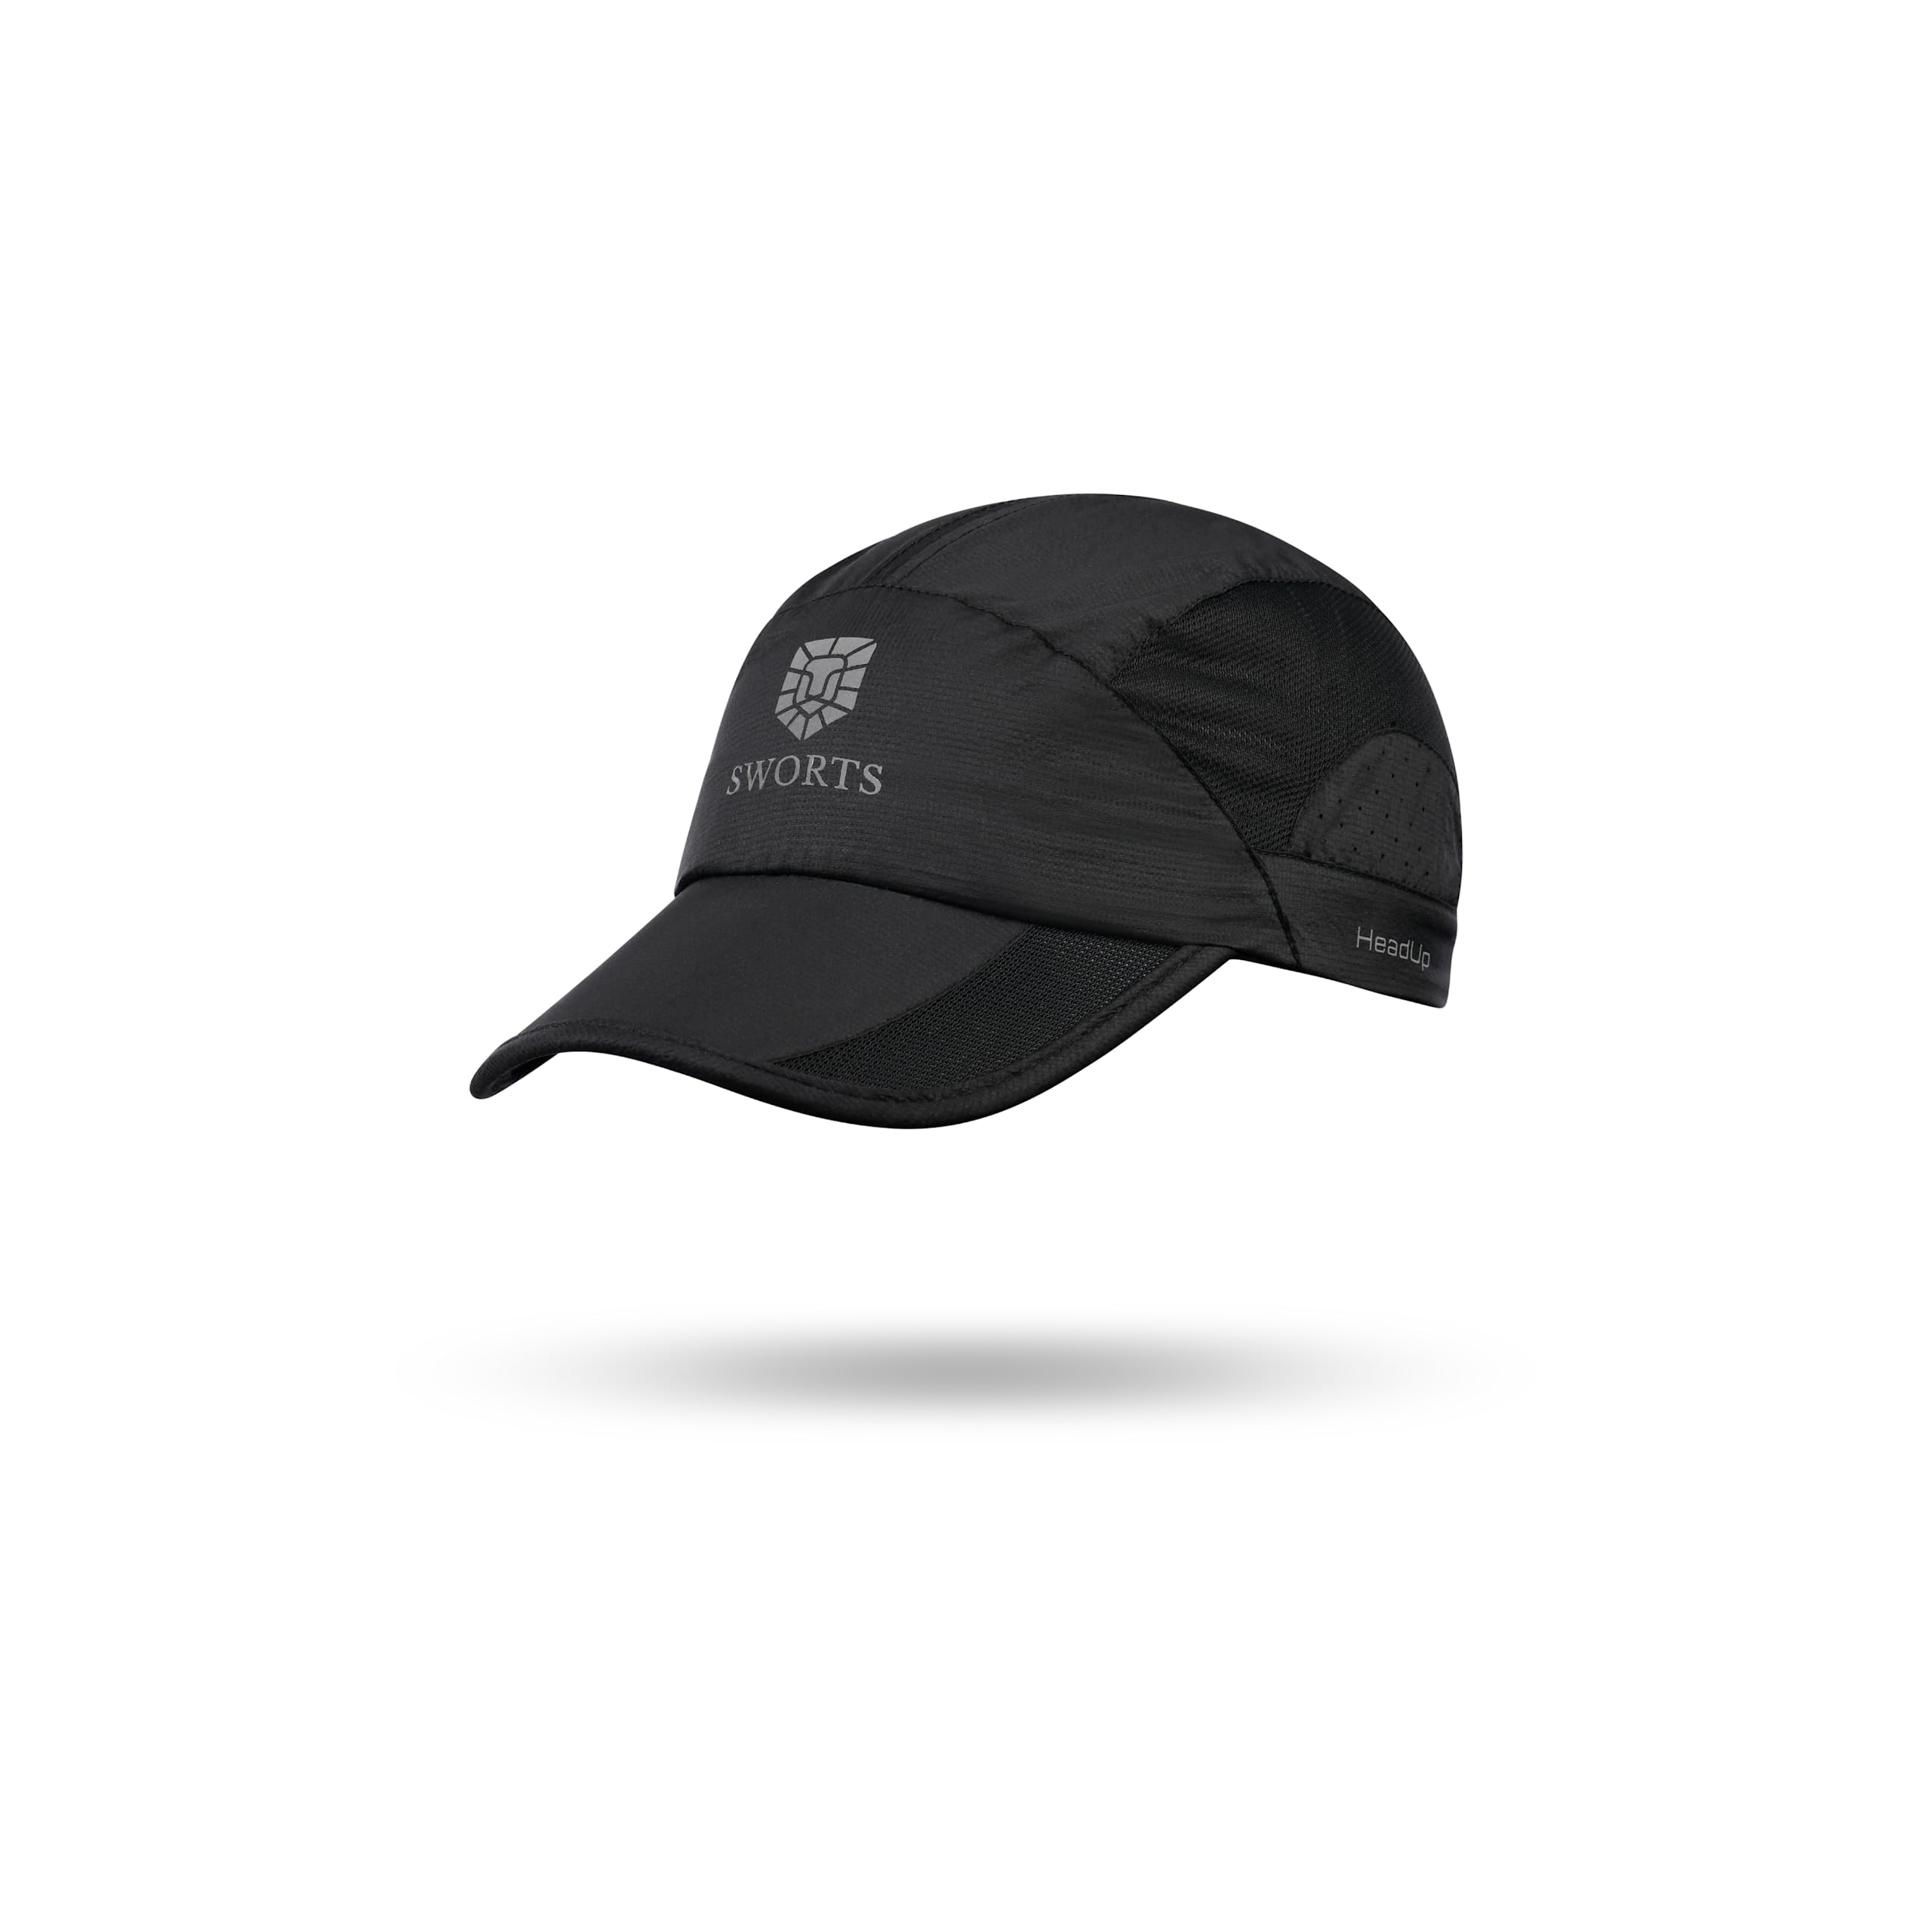 SWORTS HeadUp Running Cap (Ultralight) Dünne Laufkappe mit Belüftendem Mesh (Sport Basecap Damen & Herren)